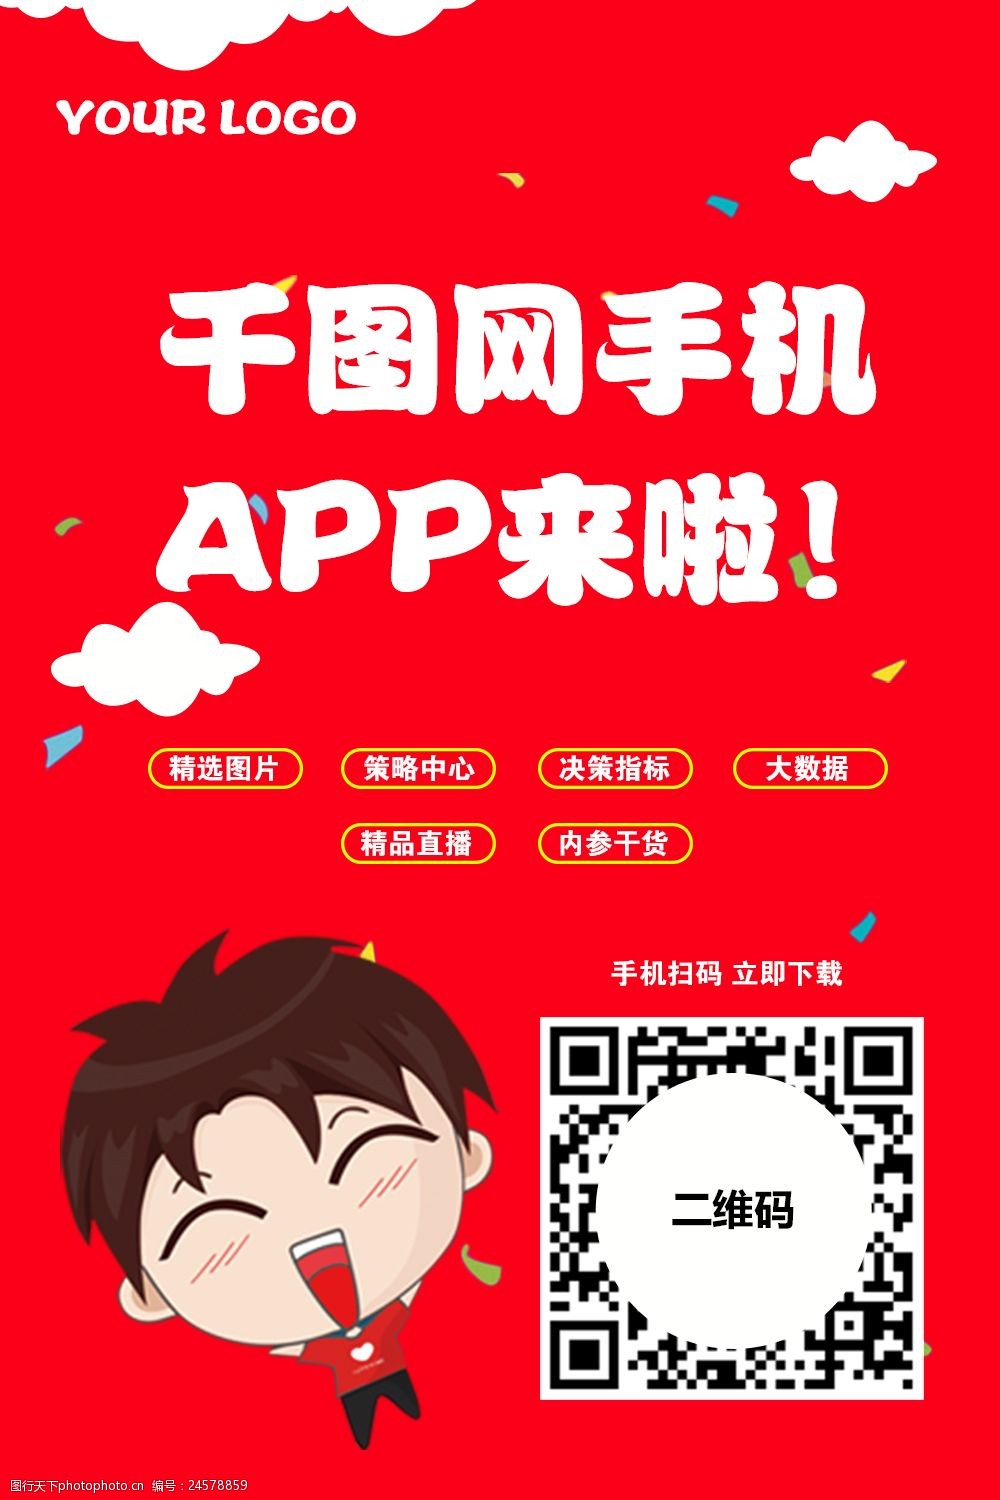 关键词:app下载引导 二维码 手机app 卡通 红色背景 手机app宣传海报